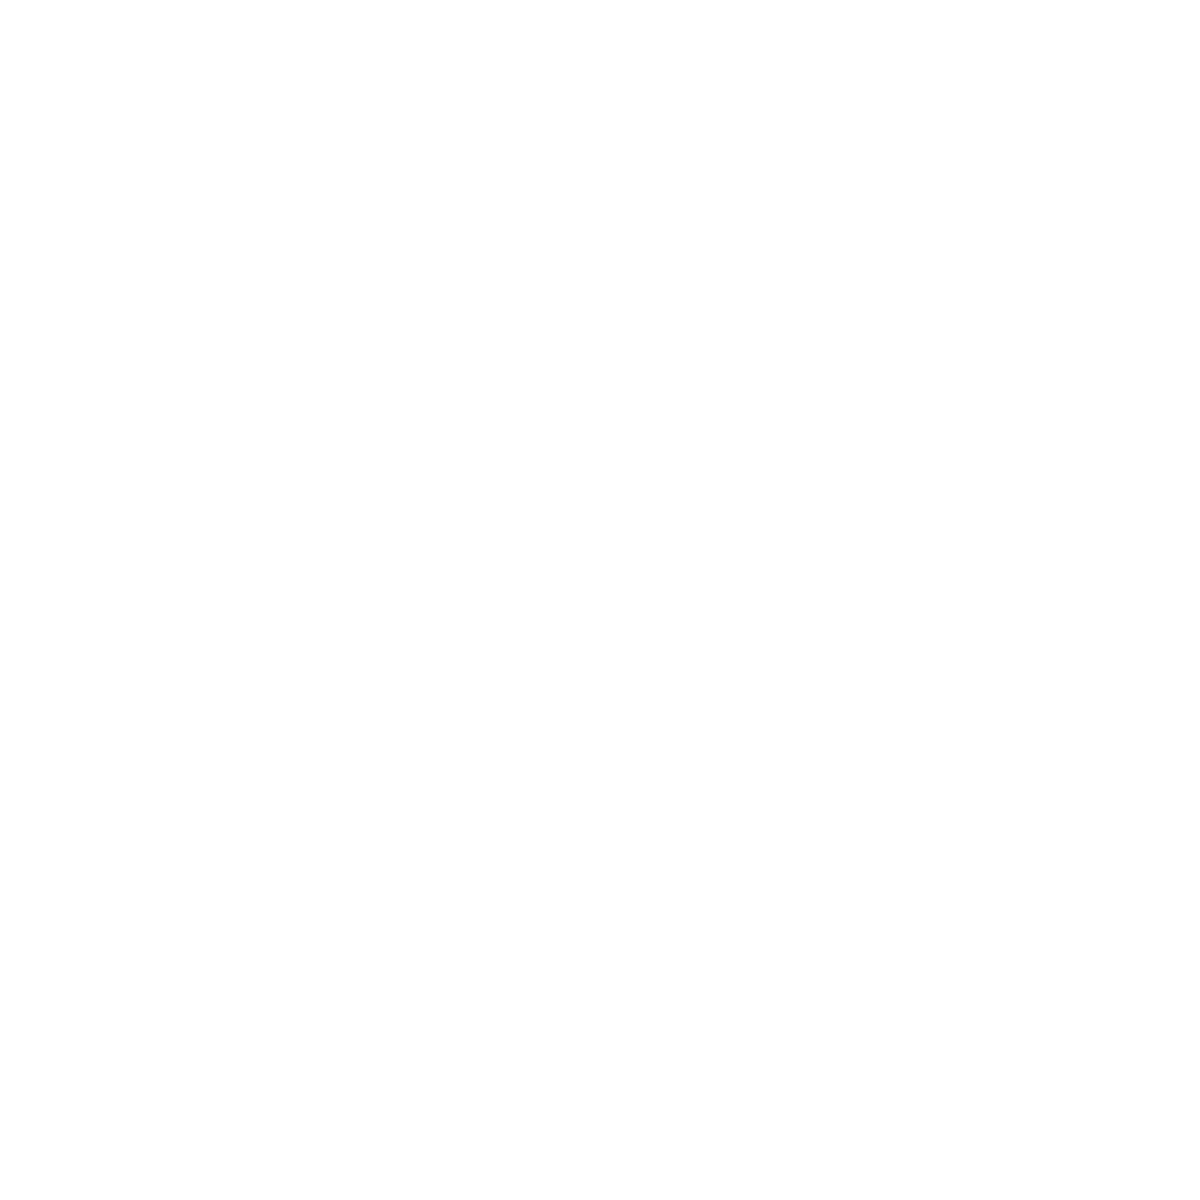 cosmética certificada sello